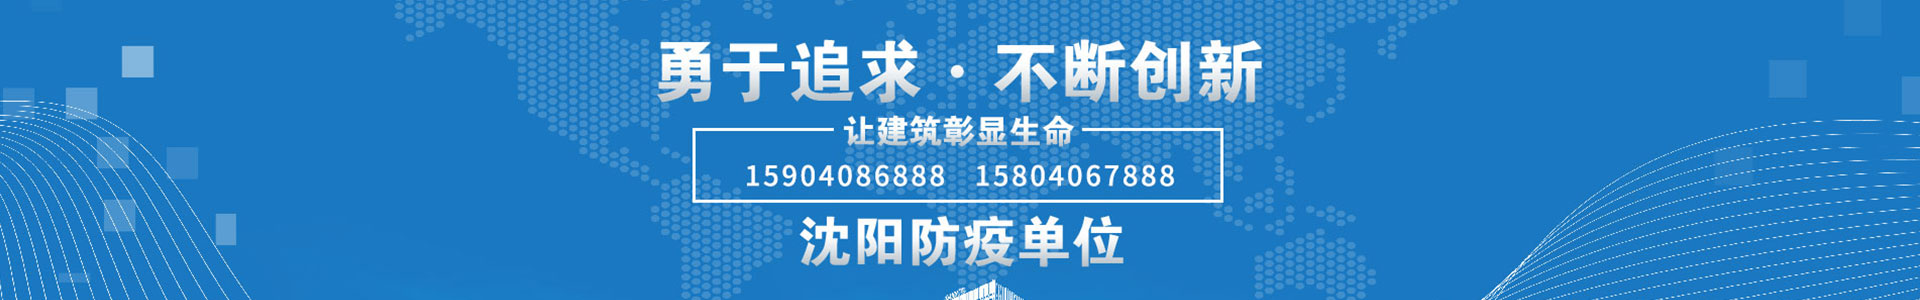 皇冠手机官方网站【中国】有限公司